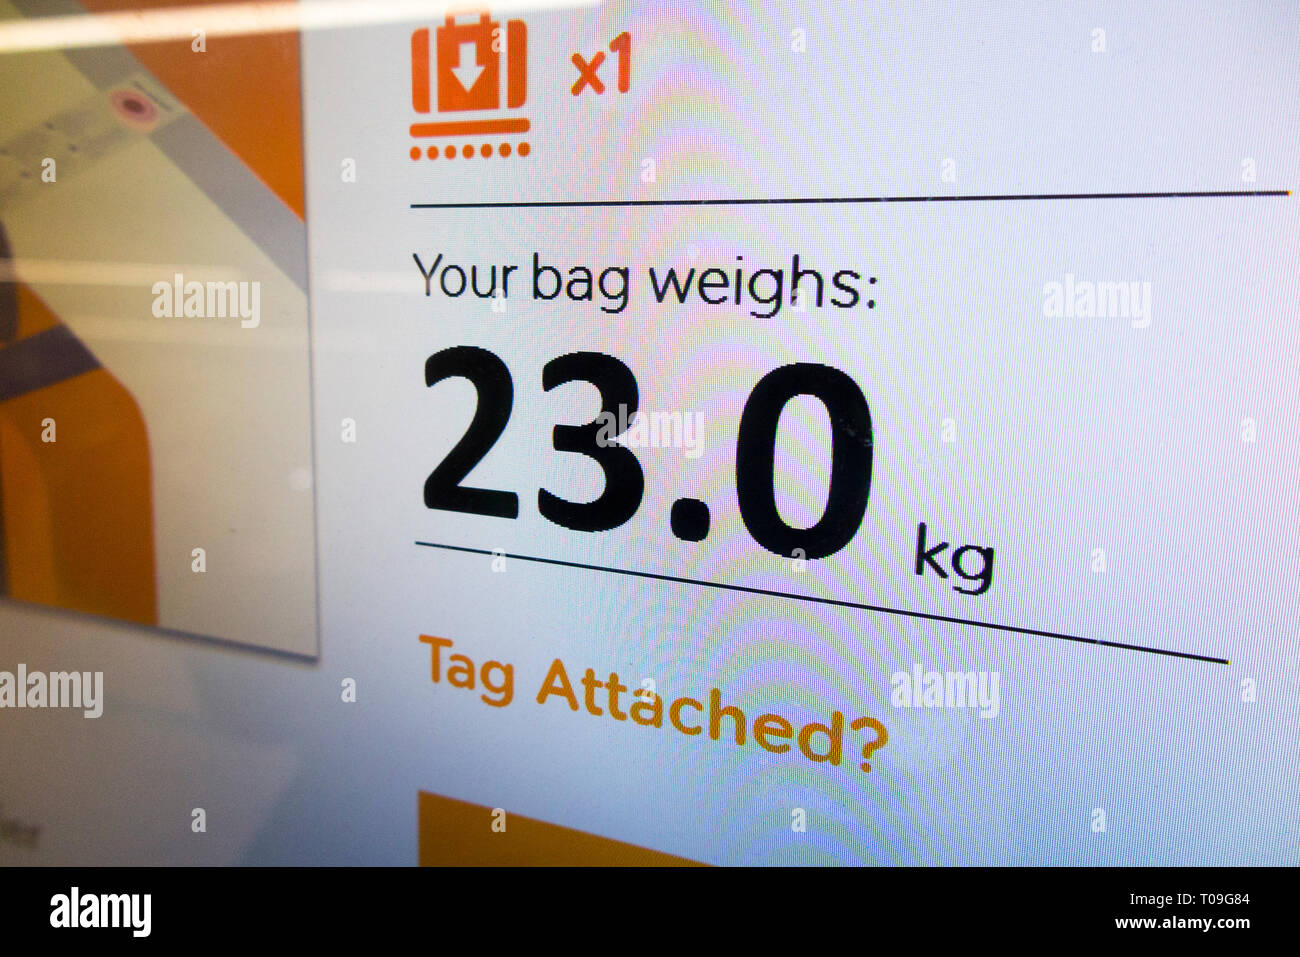 Flughafen Check-in Waage zeigt 23 kg kg/Waagen Anzeige Passagier Taschen Gepäck/Gepäck Gewicht zu wiegen in die Ebene halten überprüft. (104) Stockfoto